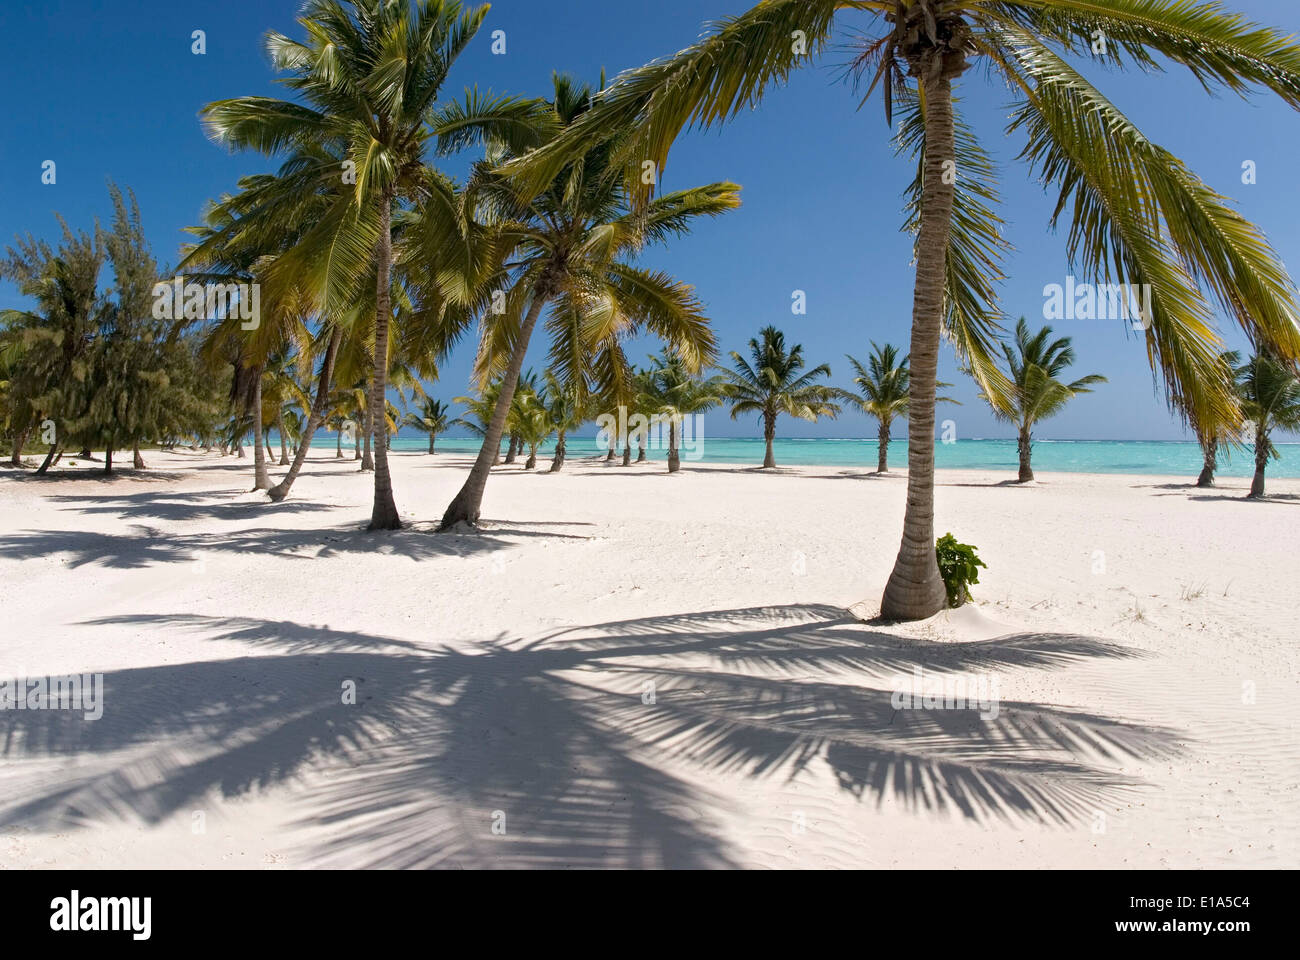 Palm Beach con Cocospalm (Cocos nucifera) Foto Stock